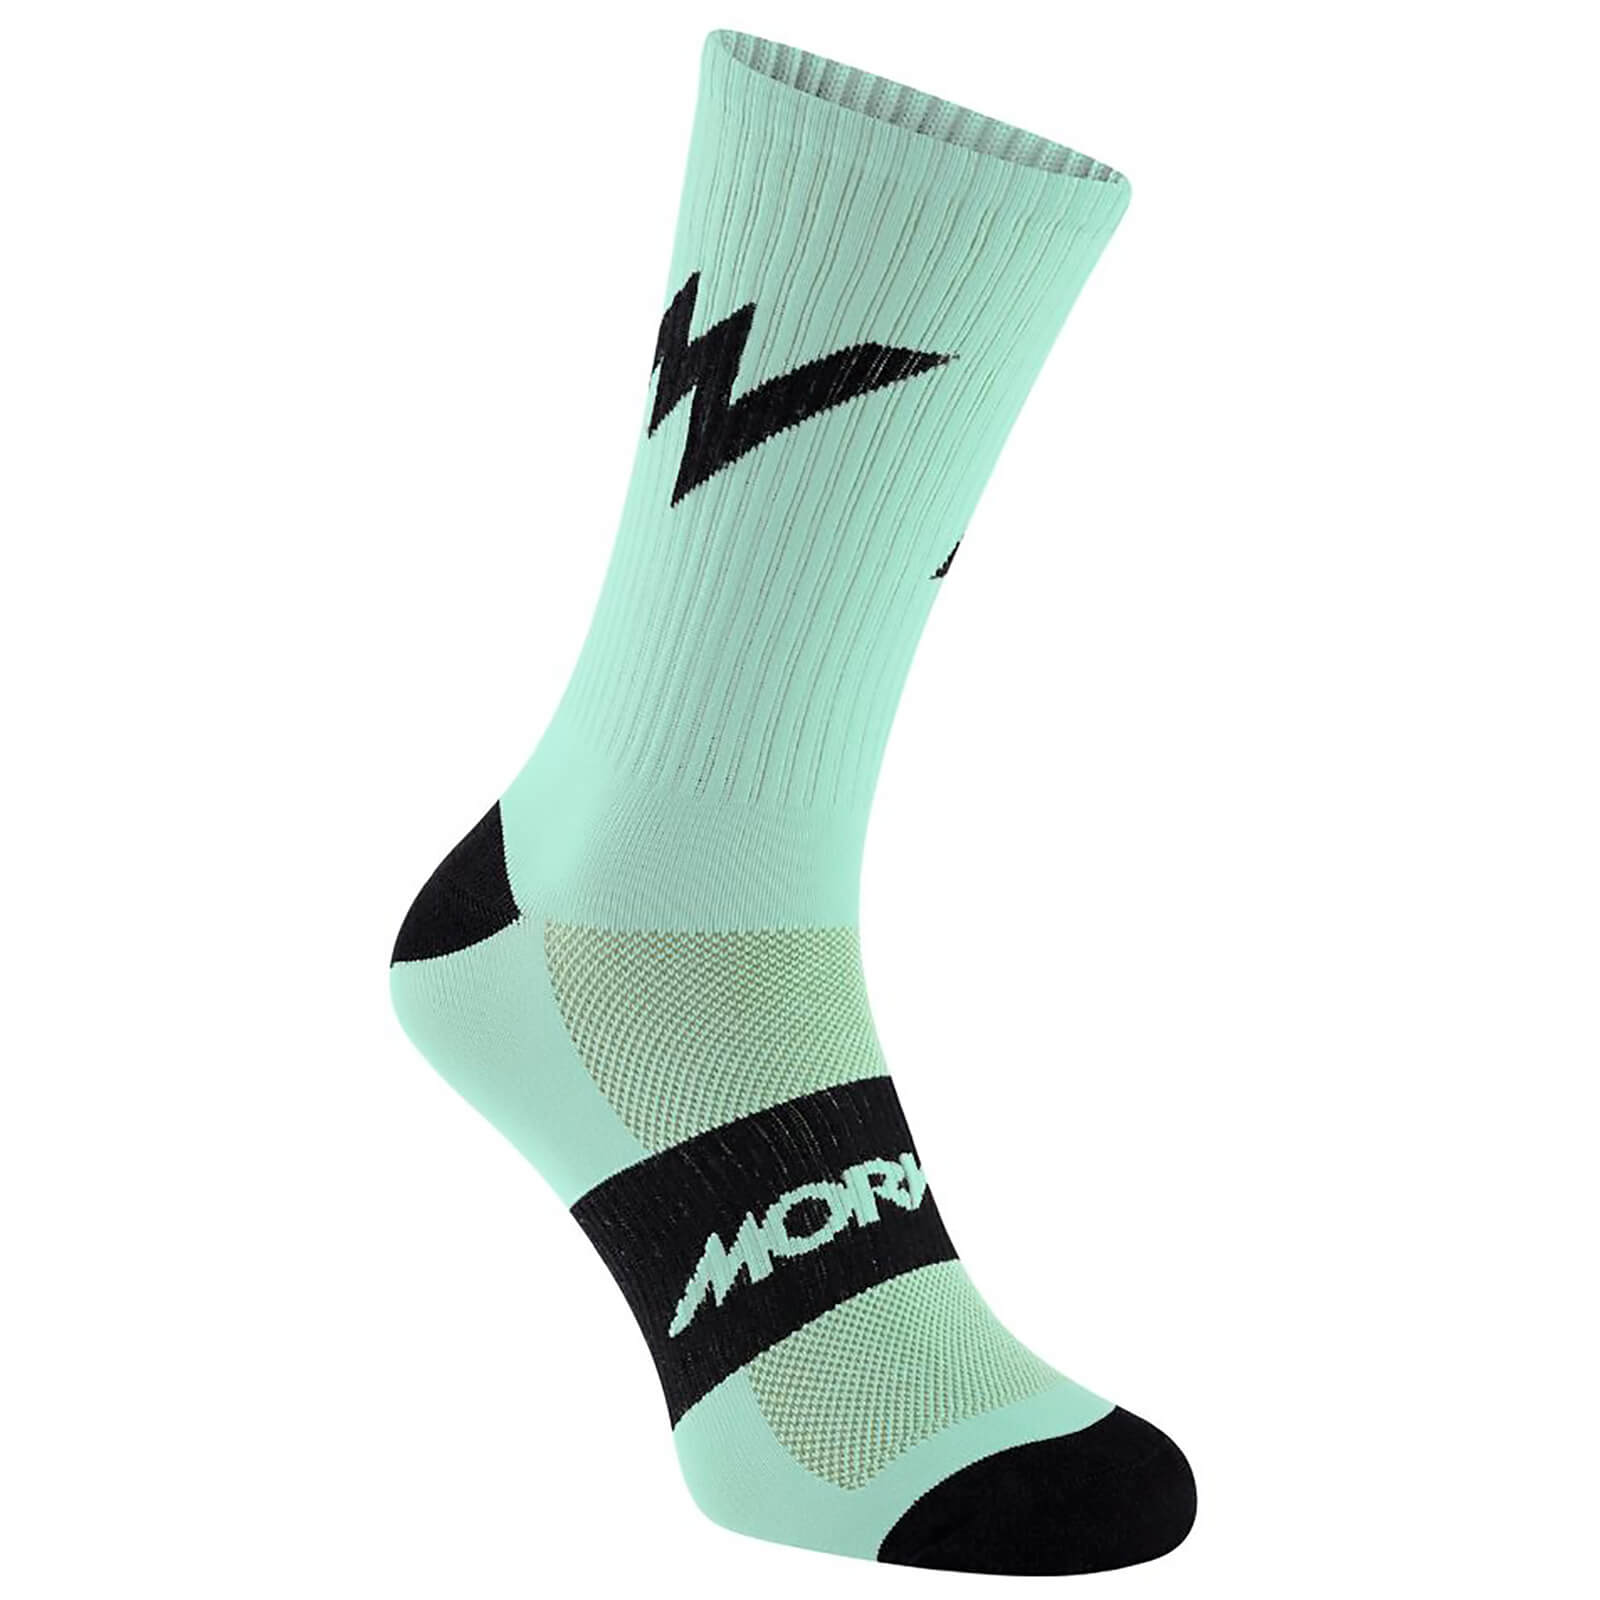 Morvelo Series Emblem Celeste Socks - S/M